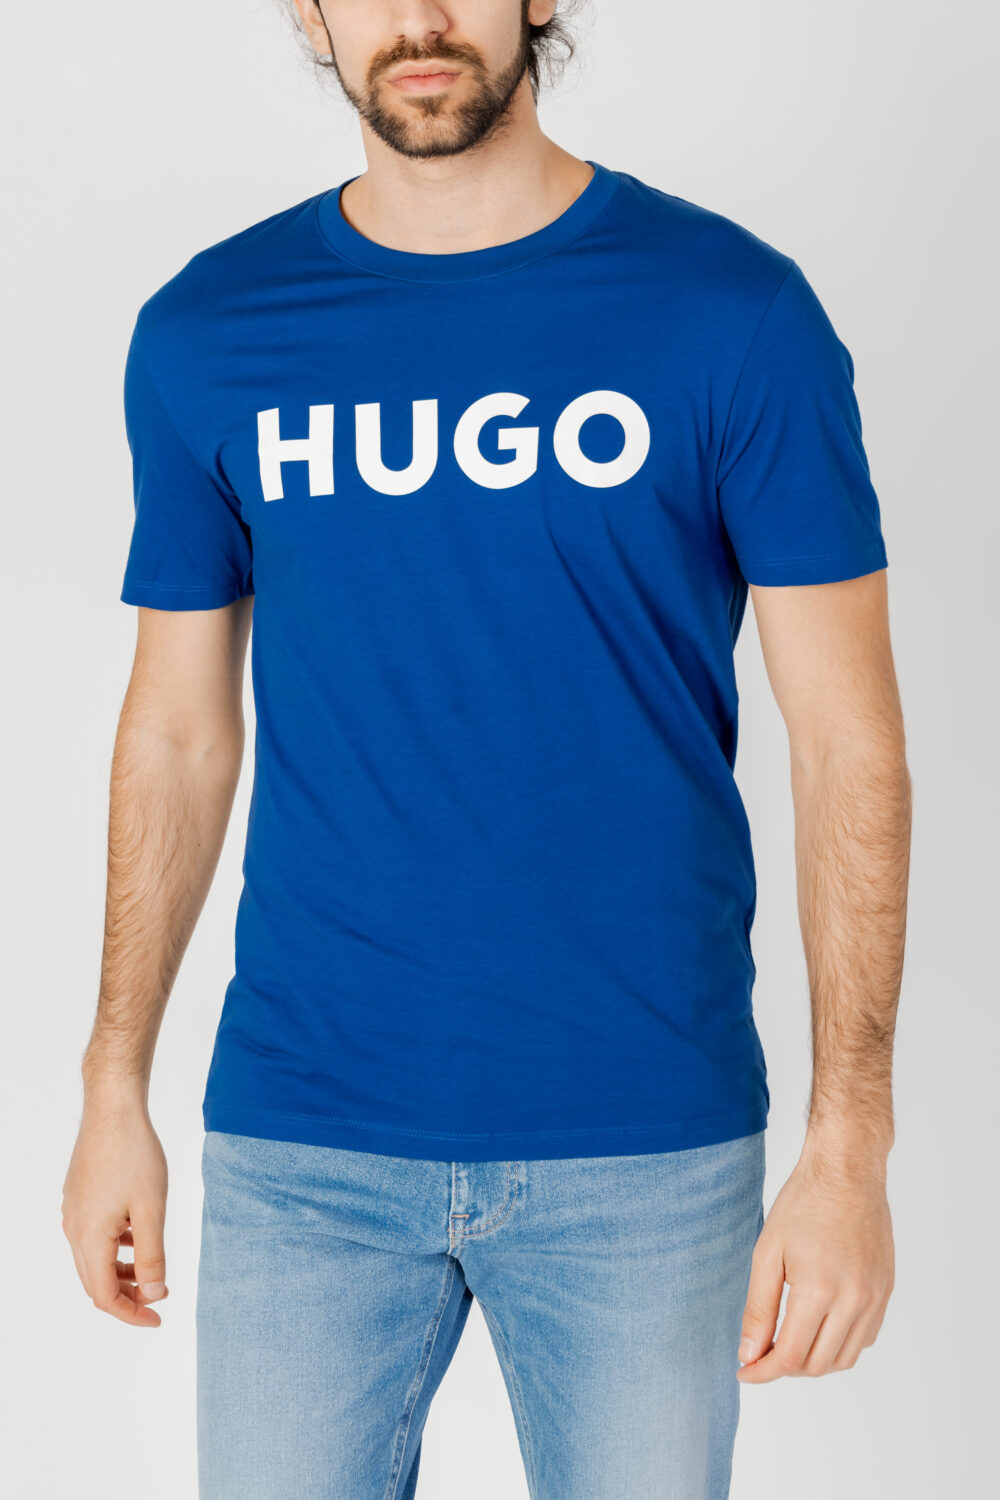 T-shirt Hugo Dulivio 10229761 01 Blu - Foto 1